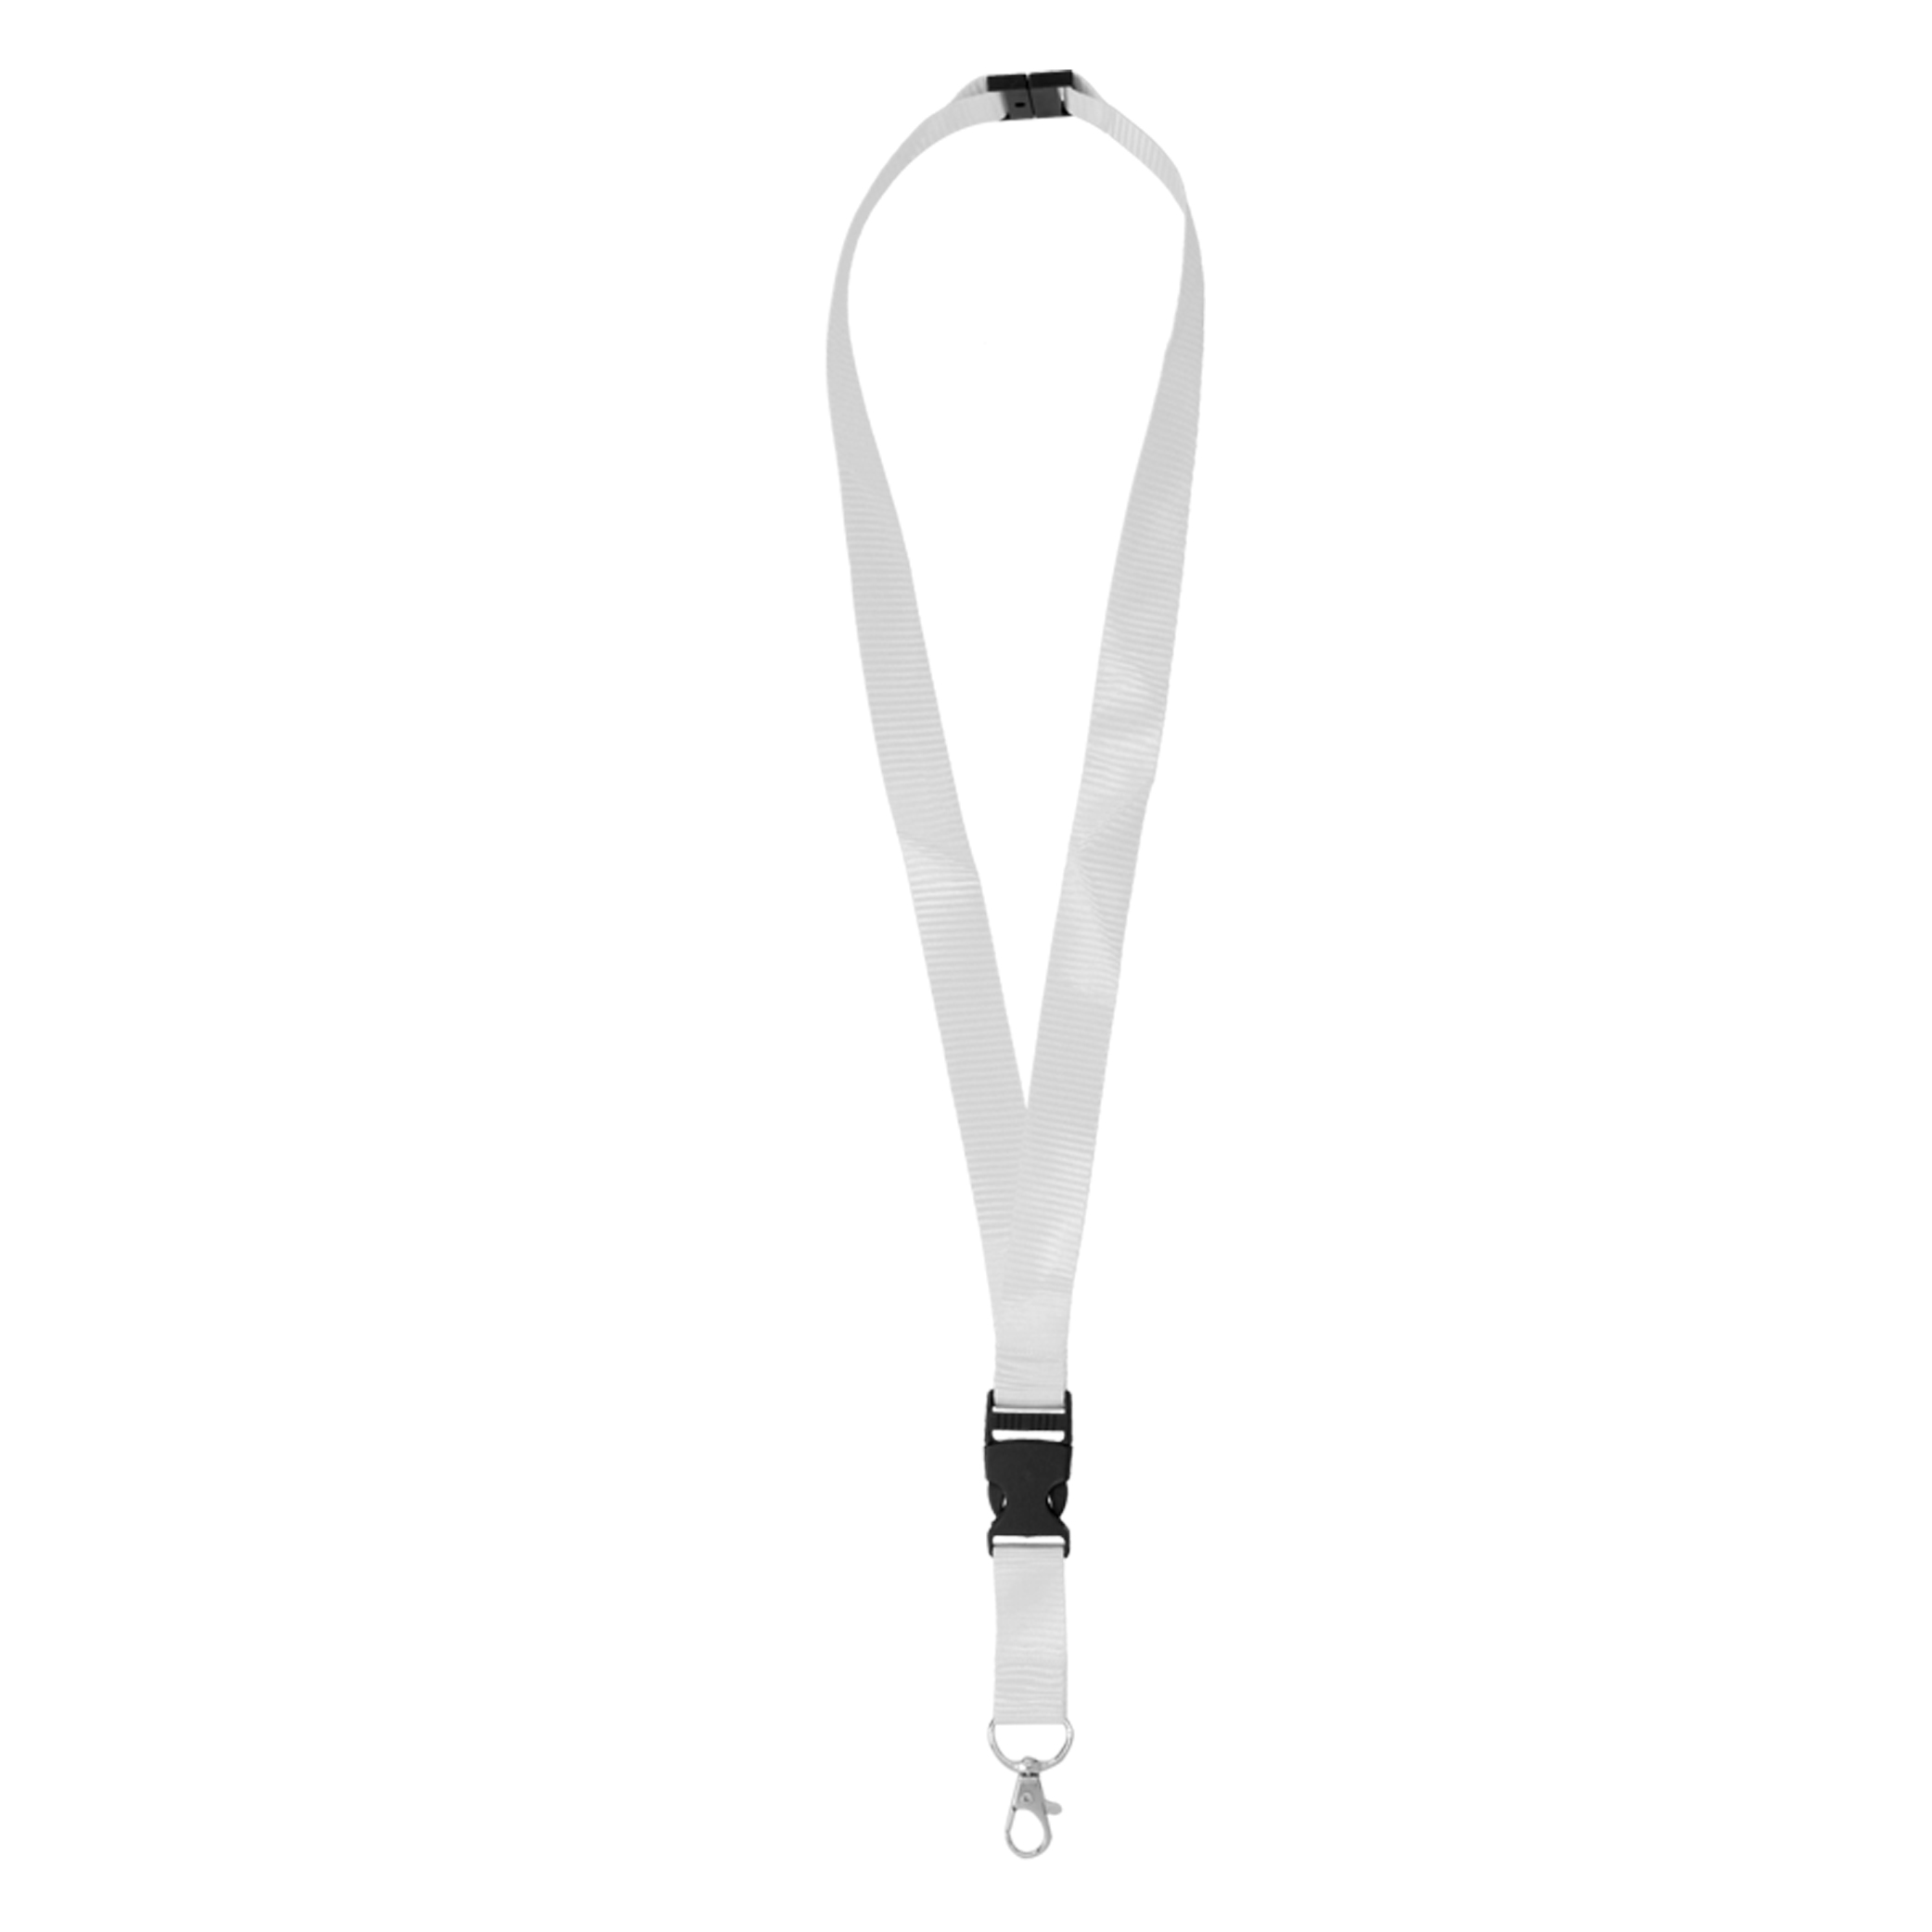 O-064, Cinta porta gafete con broche de seguridad, clip desmontable de plástico y gancho metálico